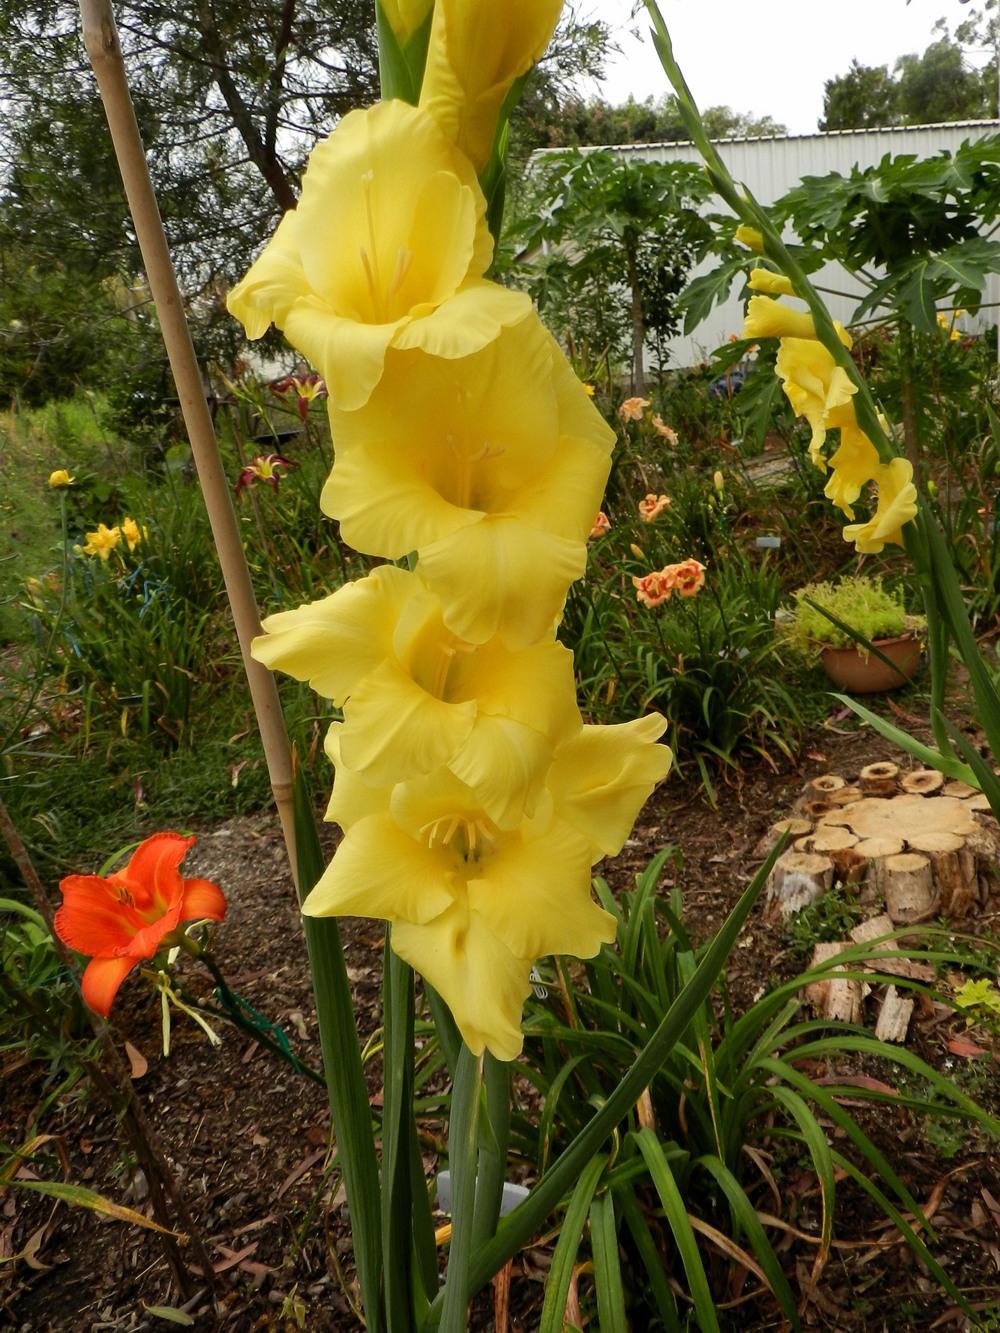 Photo of Gladiola (Gladiolus) uploaded by Gleni